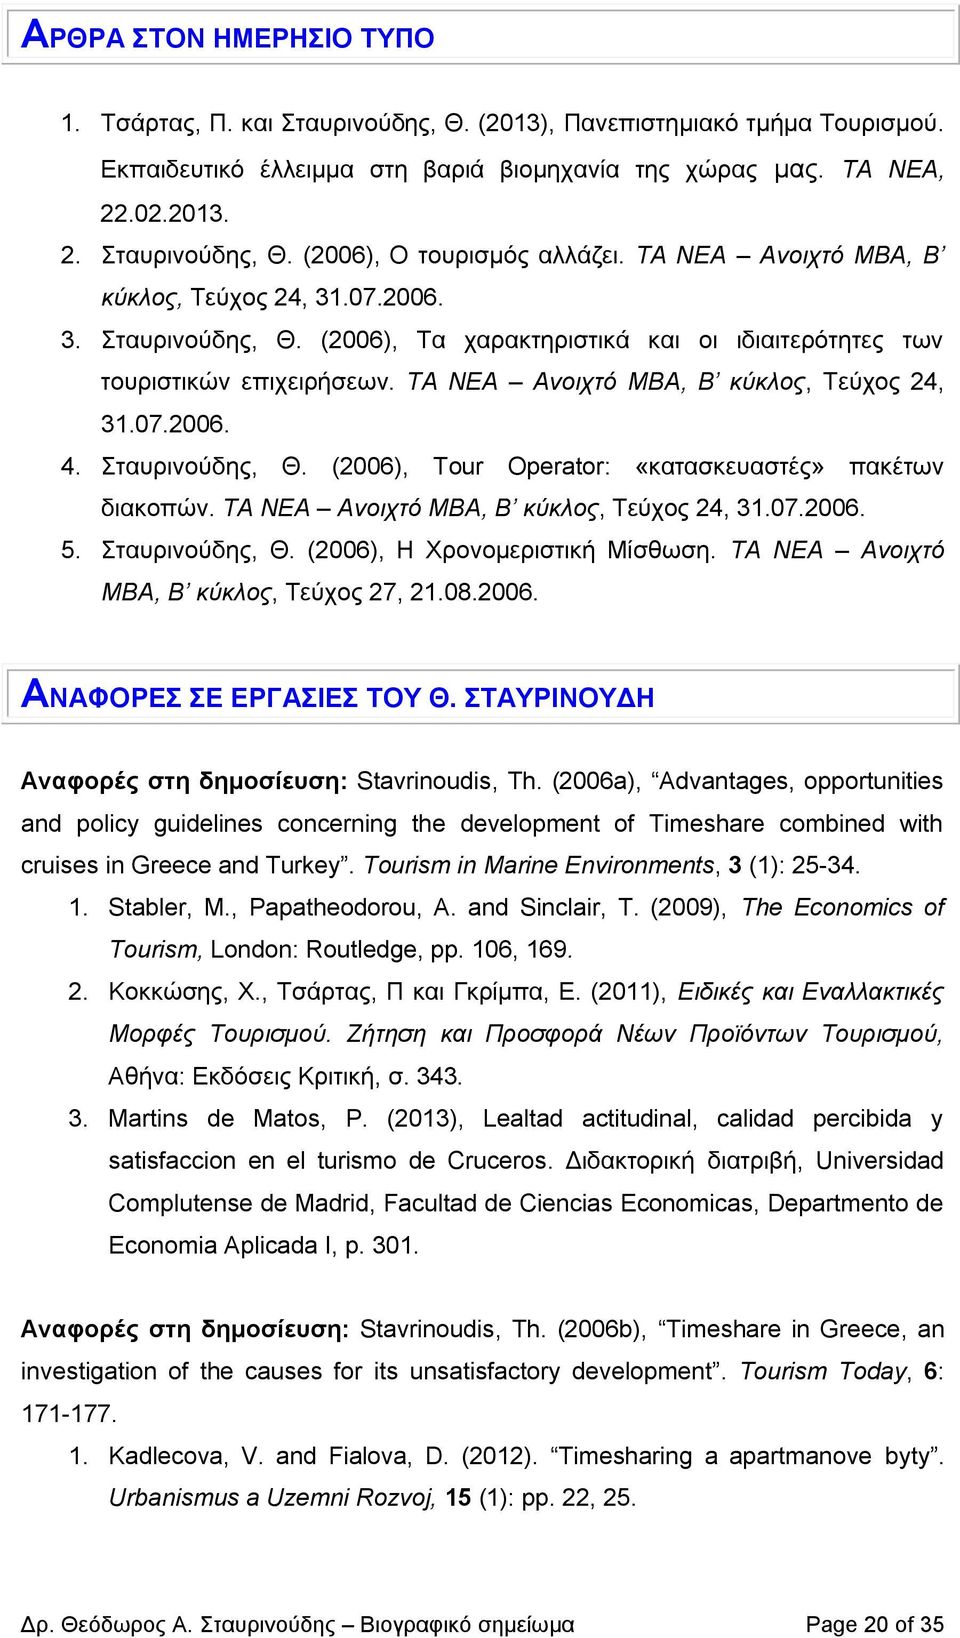 Σταυρινούδης, Θ. (2006), Tour Operator: «κατασκευαστές» πακέτων διακοπών. ΤΑ ΝΕΑ Ανοιχτό MBA, Β κύκλος, Τεύχος 24, 31.07.2006. 5. Σταυρινούδης, Θ. (2006), Η Χρονομεριστική Μίσθωση.